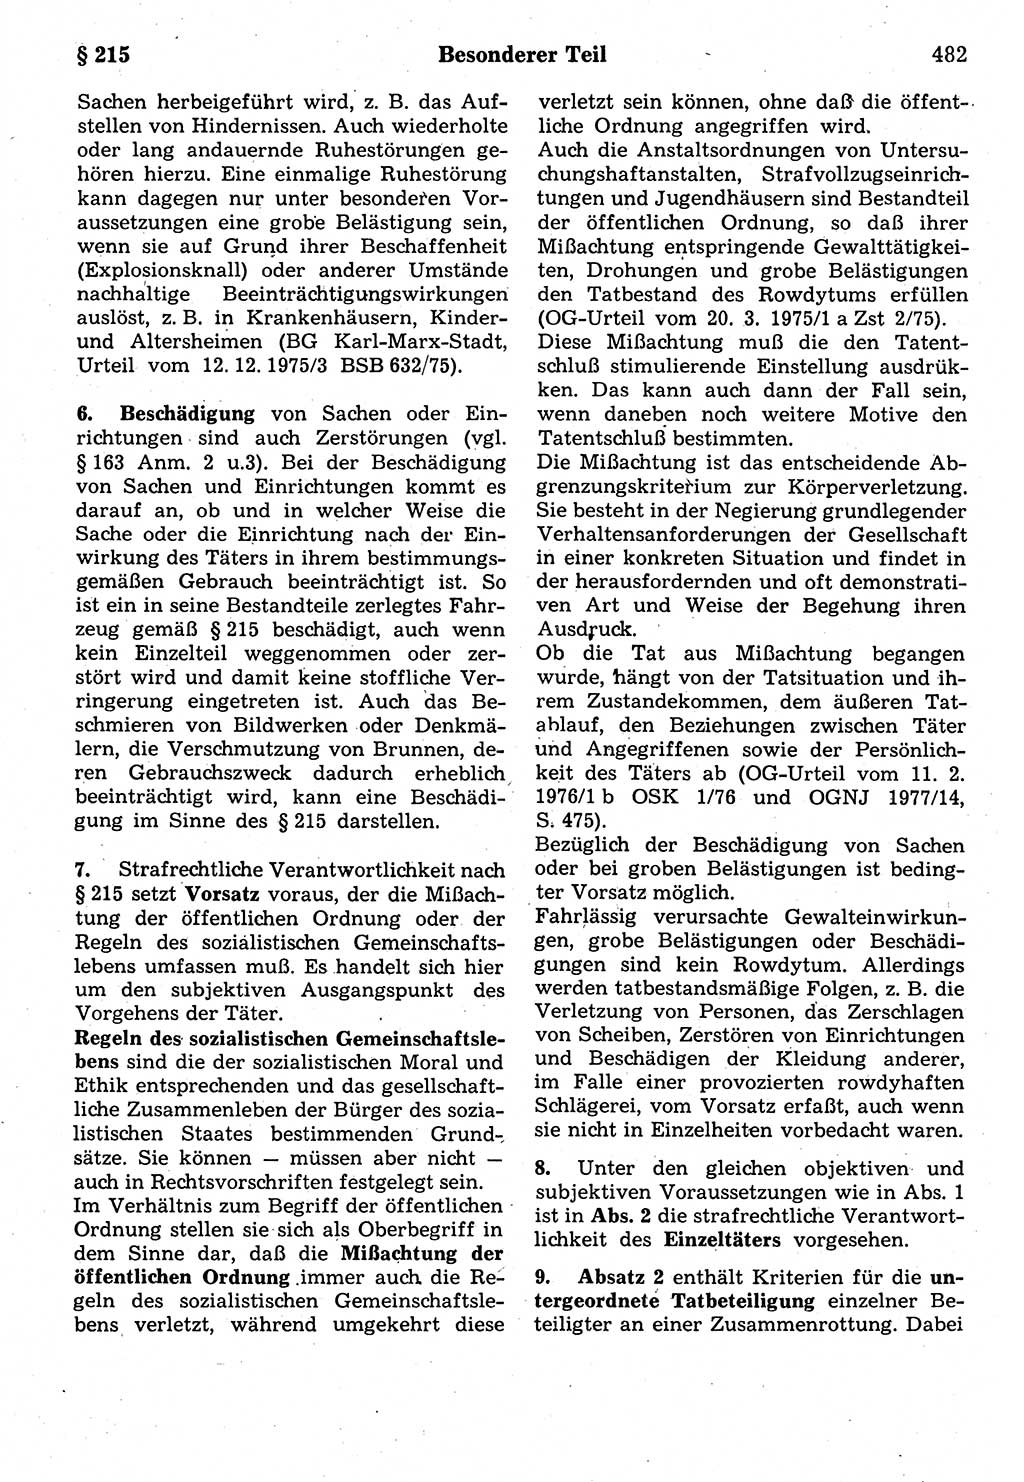 Strafrecht der Deutschen Demokratischen Republik (DDR), Kommentar zum Strafgesetzbuch (StGB) 1987, Seite 482 (Strafr. DDR Komm. StGB 1987, S. 482)